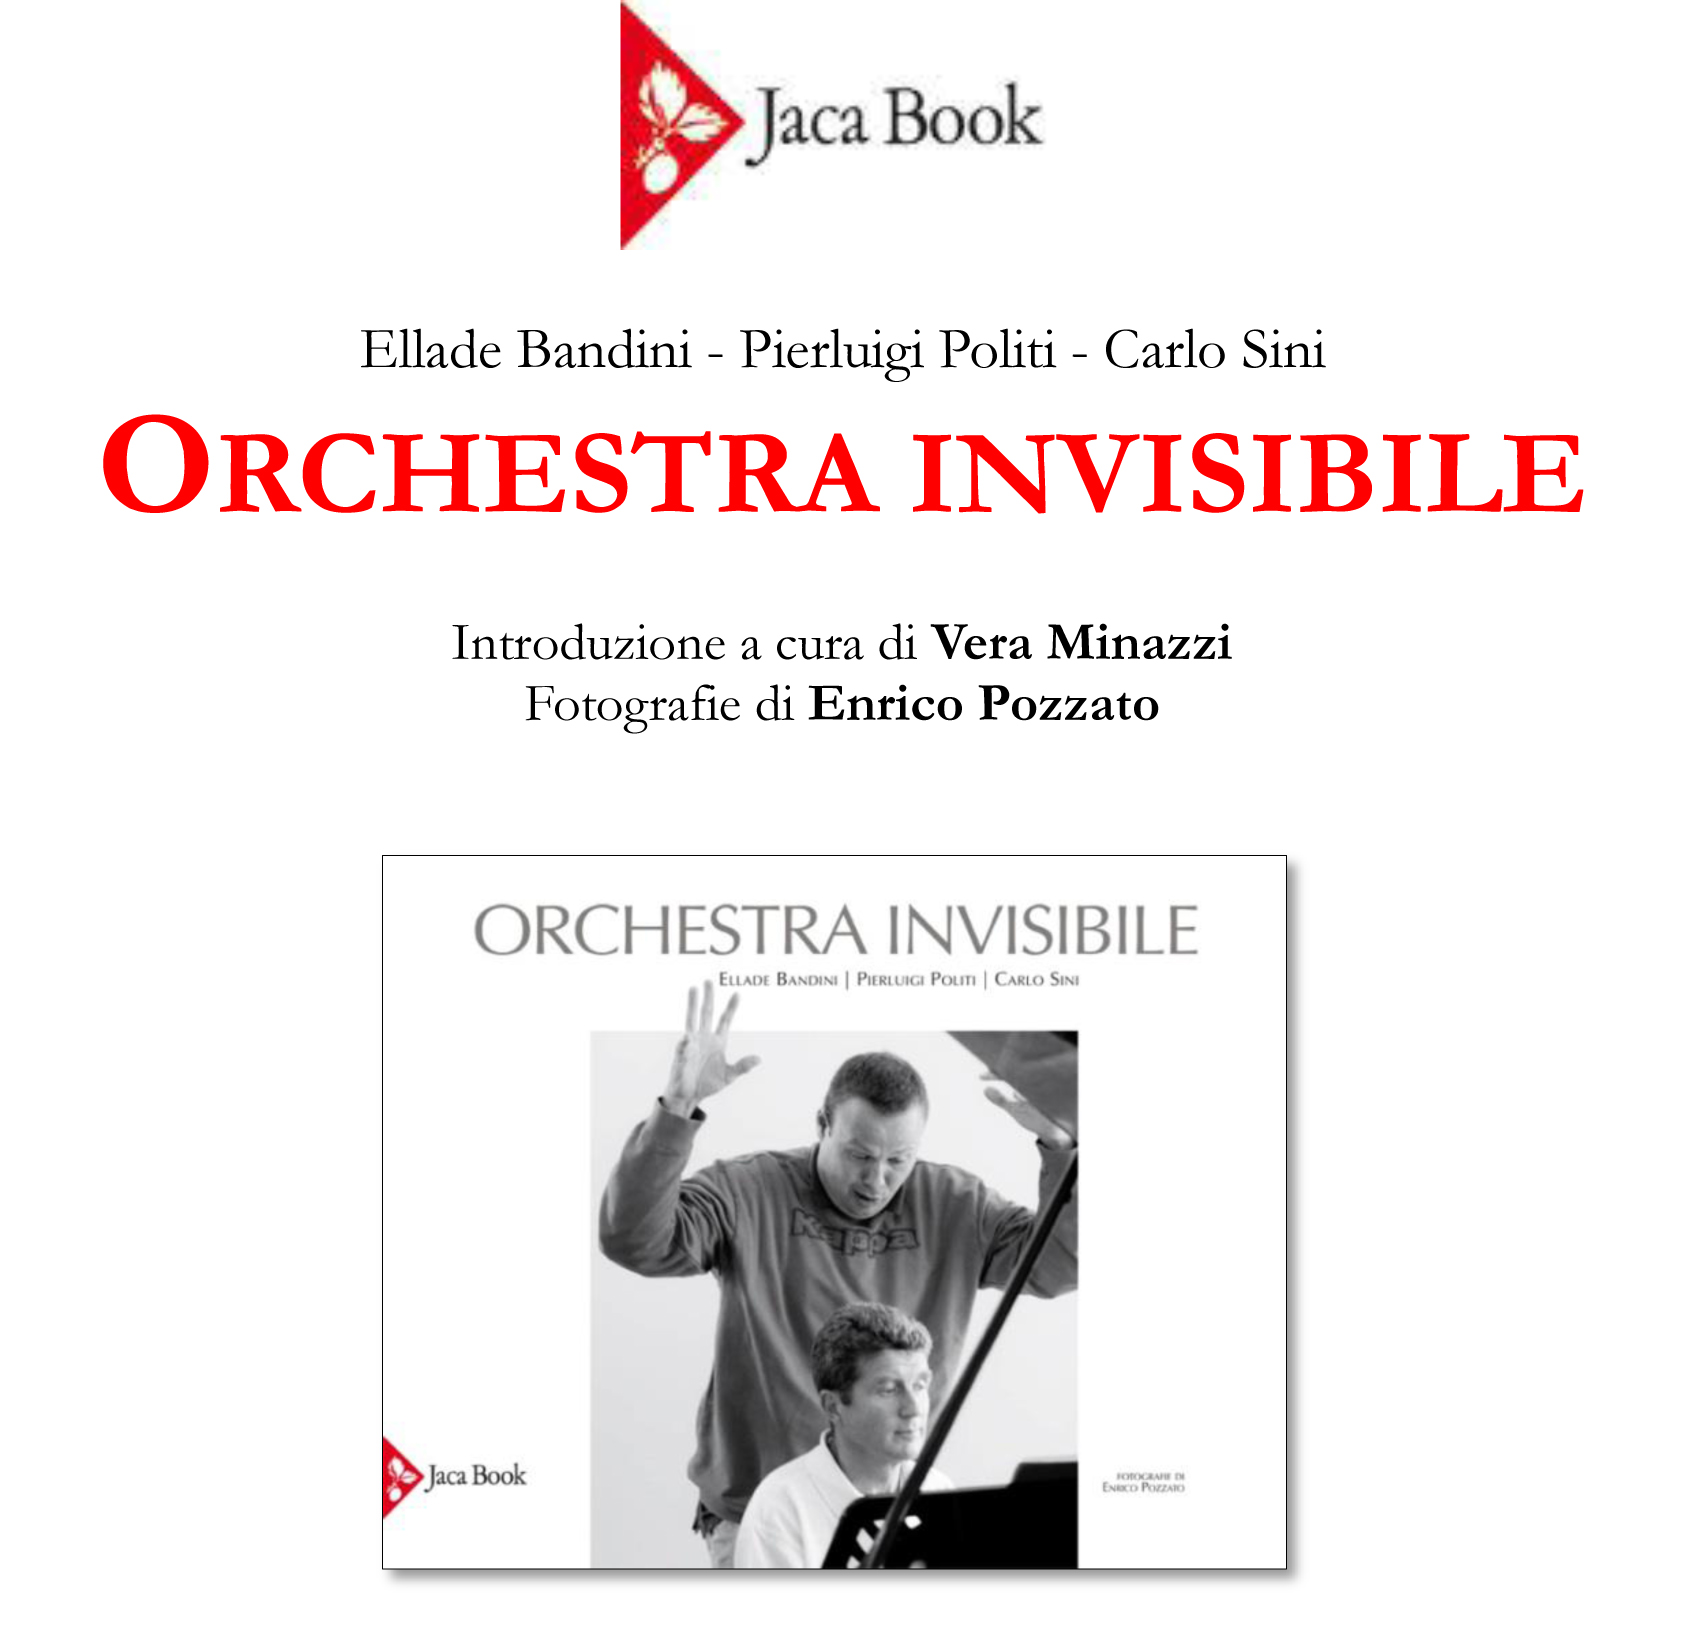 OrchestraInvisibile